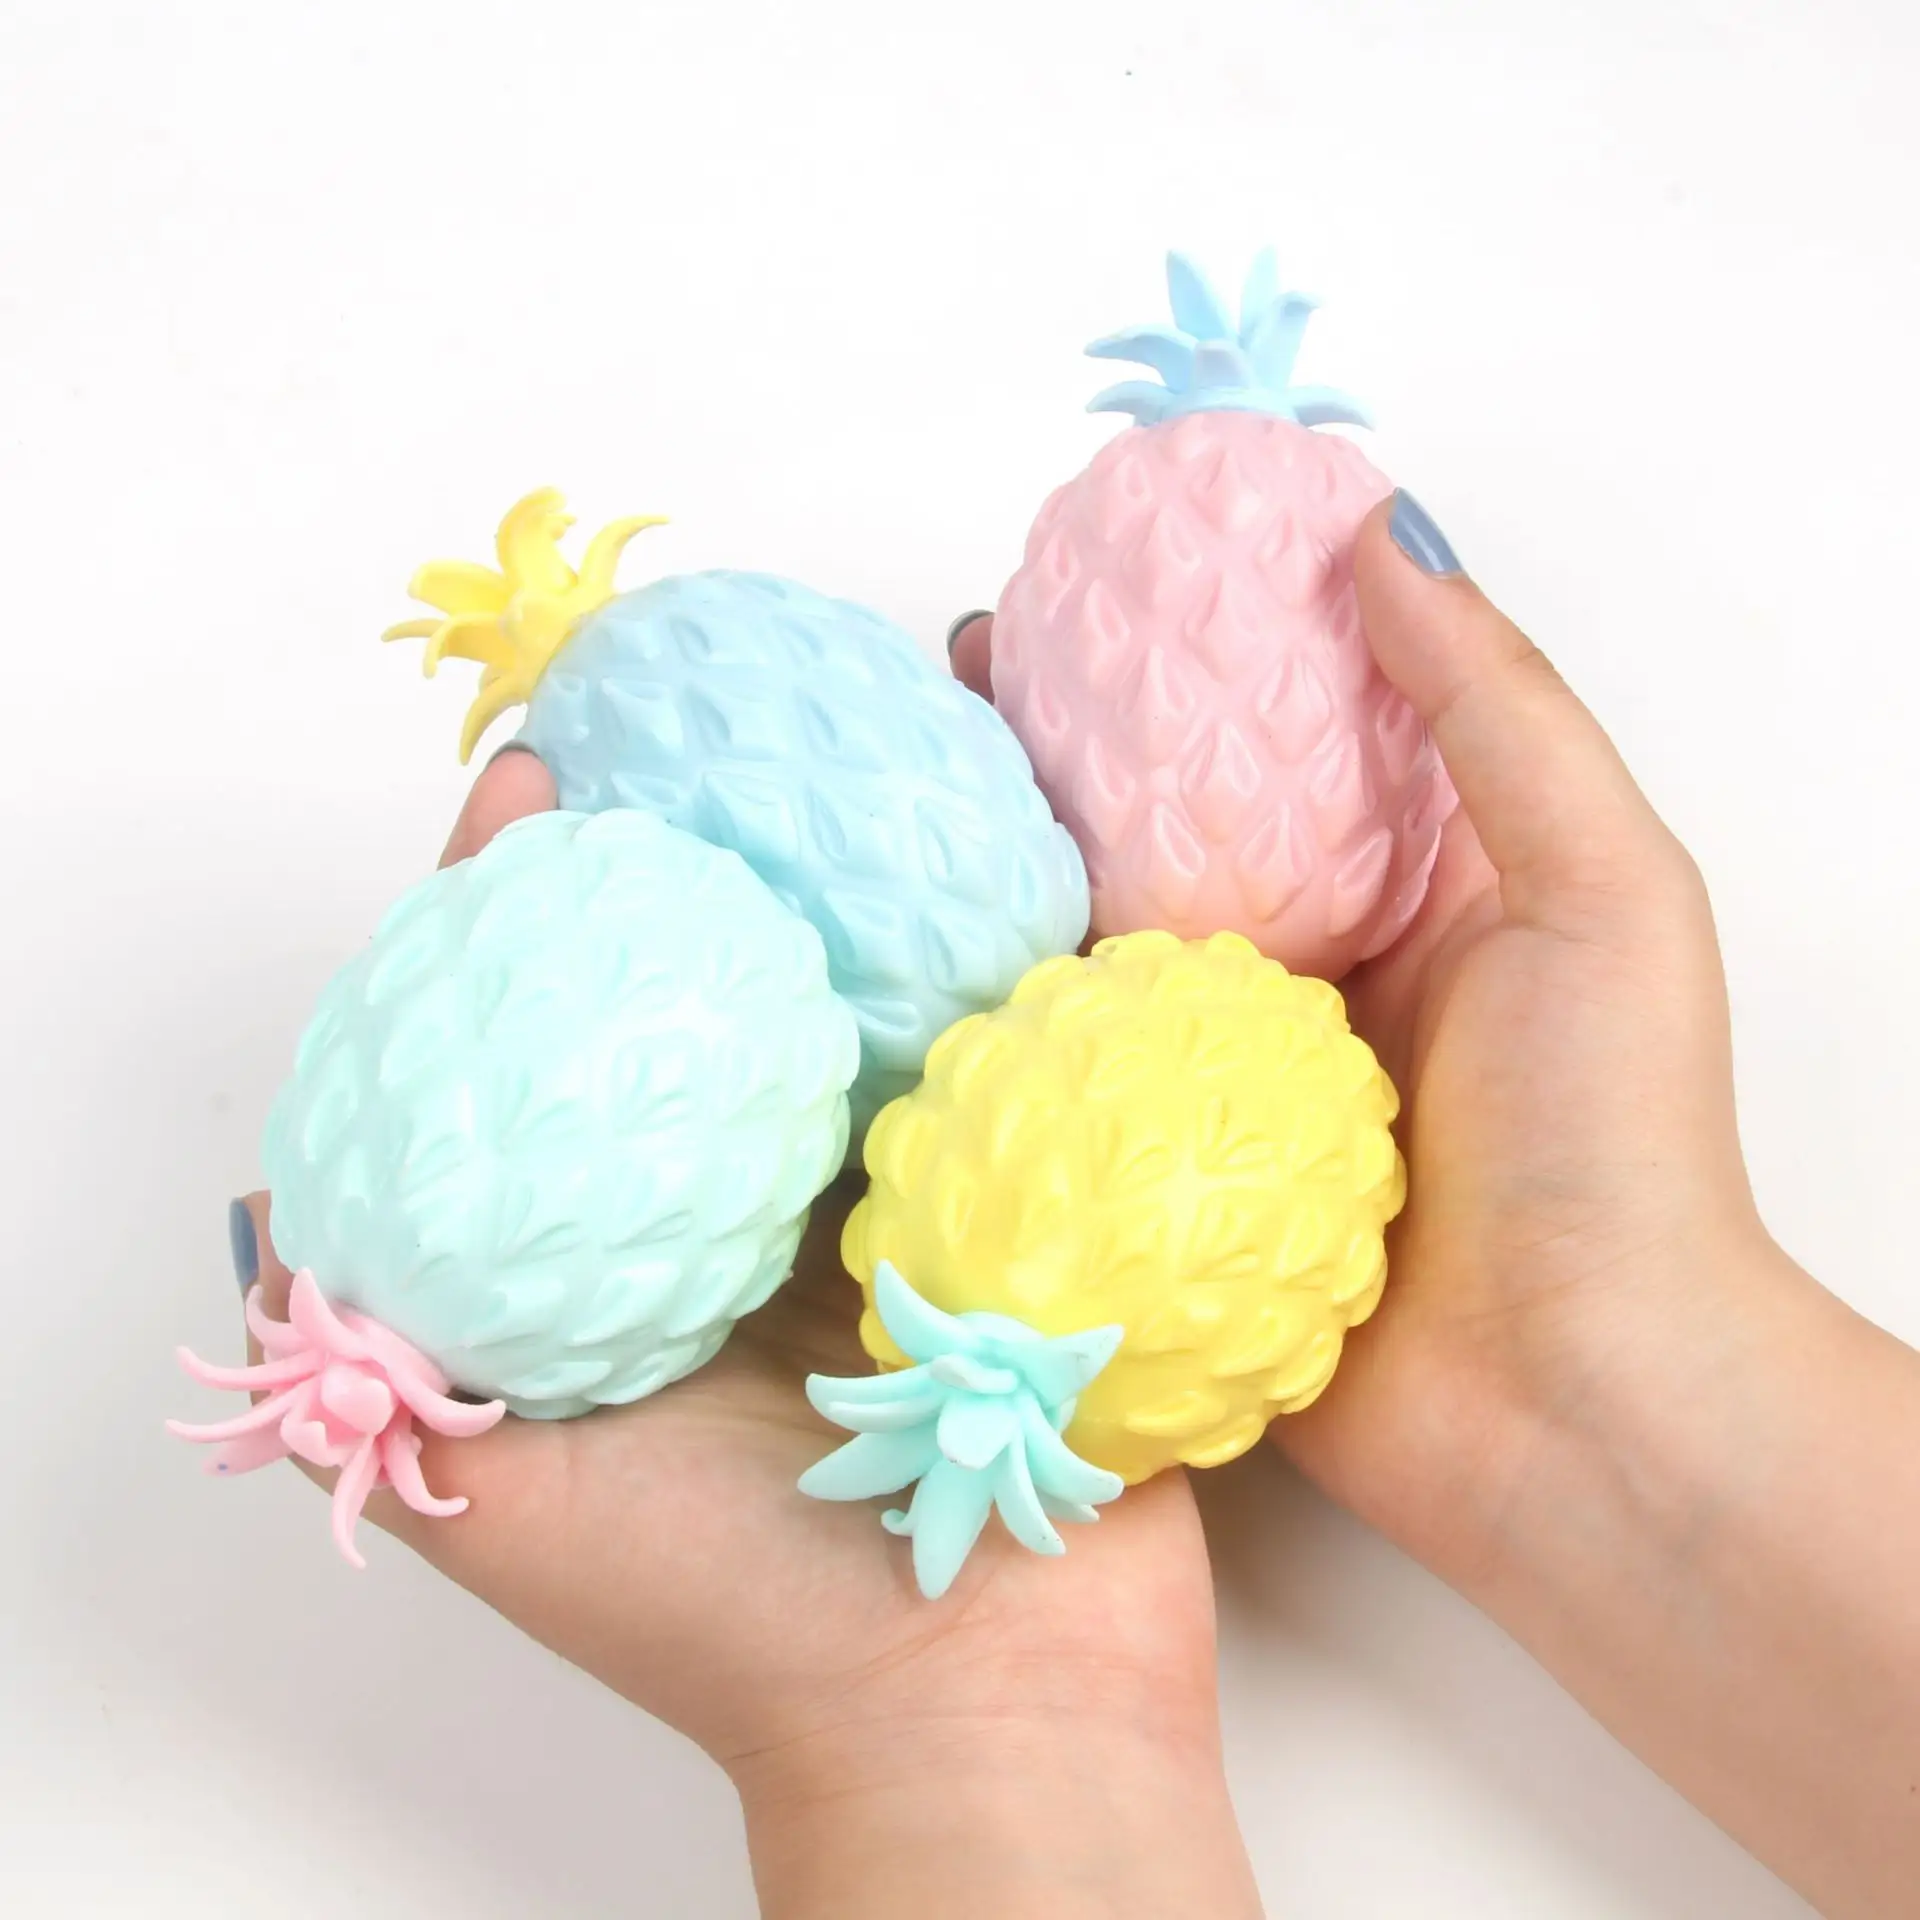 Palle antistress all'ananas per adulti e bambini spremere il giocattolo della frutta giocattoli squishy in gel antistress giocattolo di decompressione